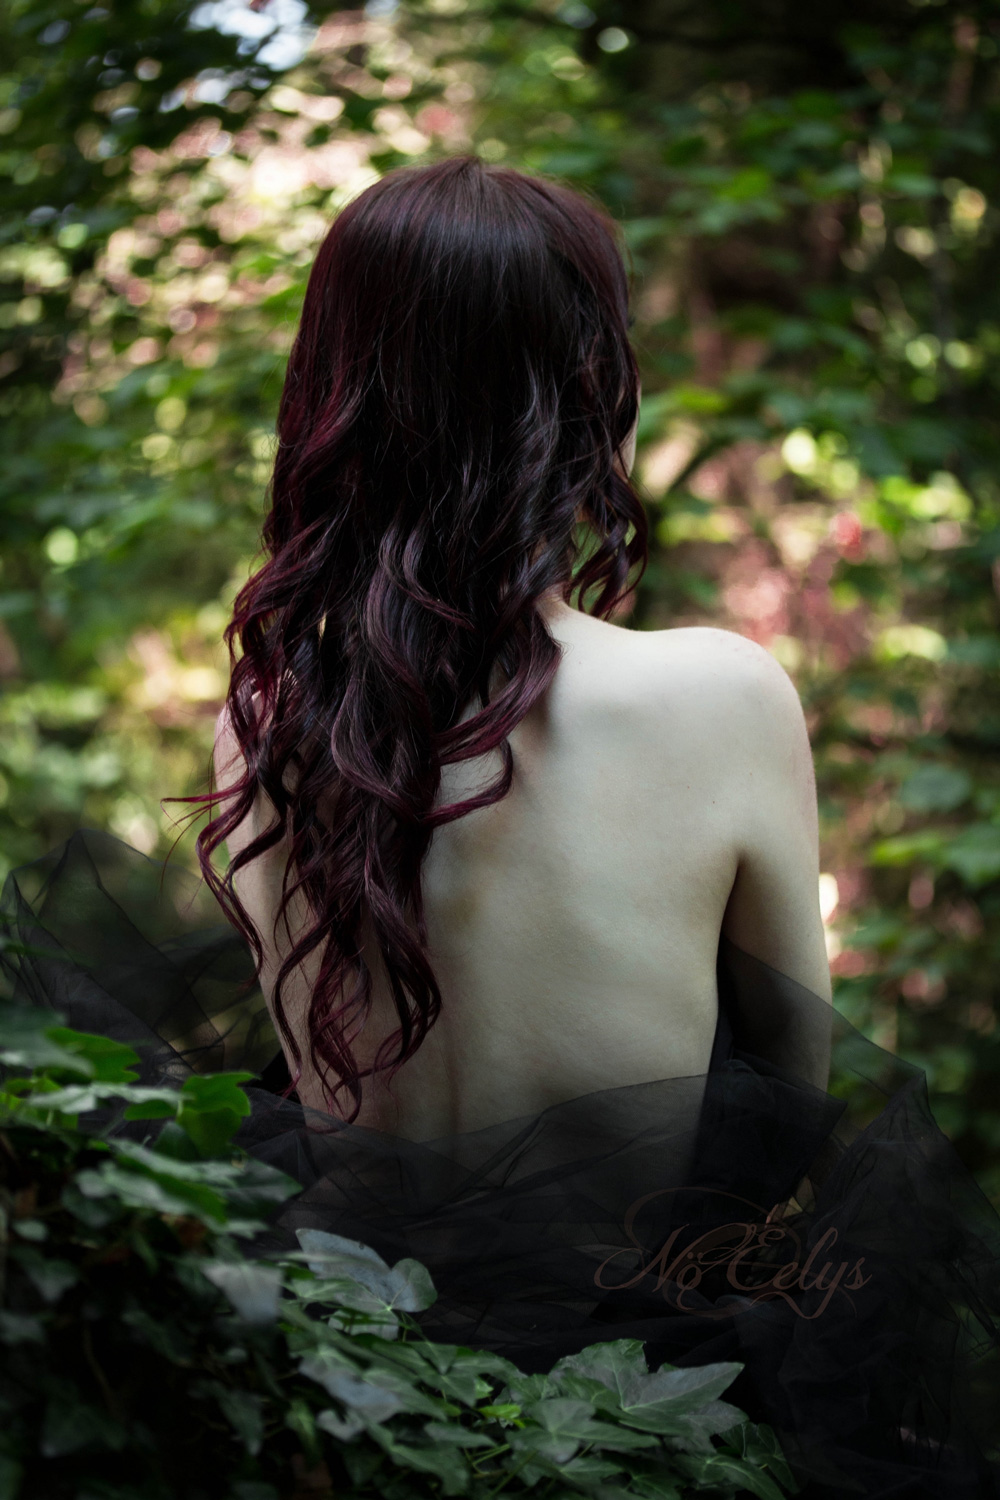 Nu artistique dans les bois par Nö Eelys, modèle alternative cheveux rouge, nature